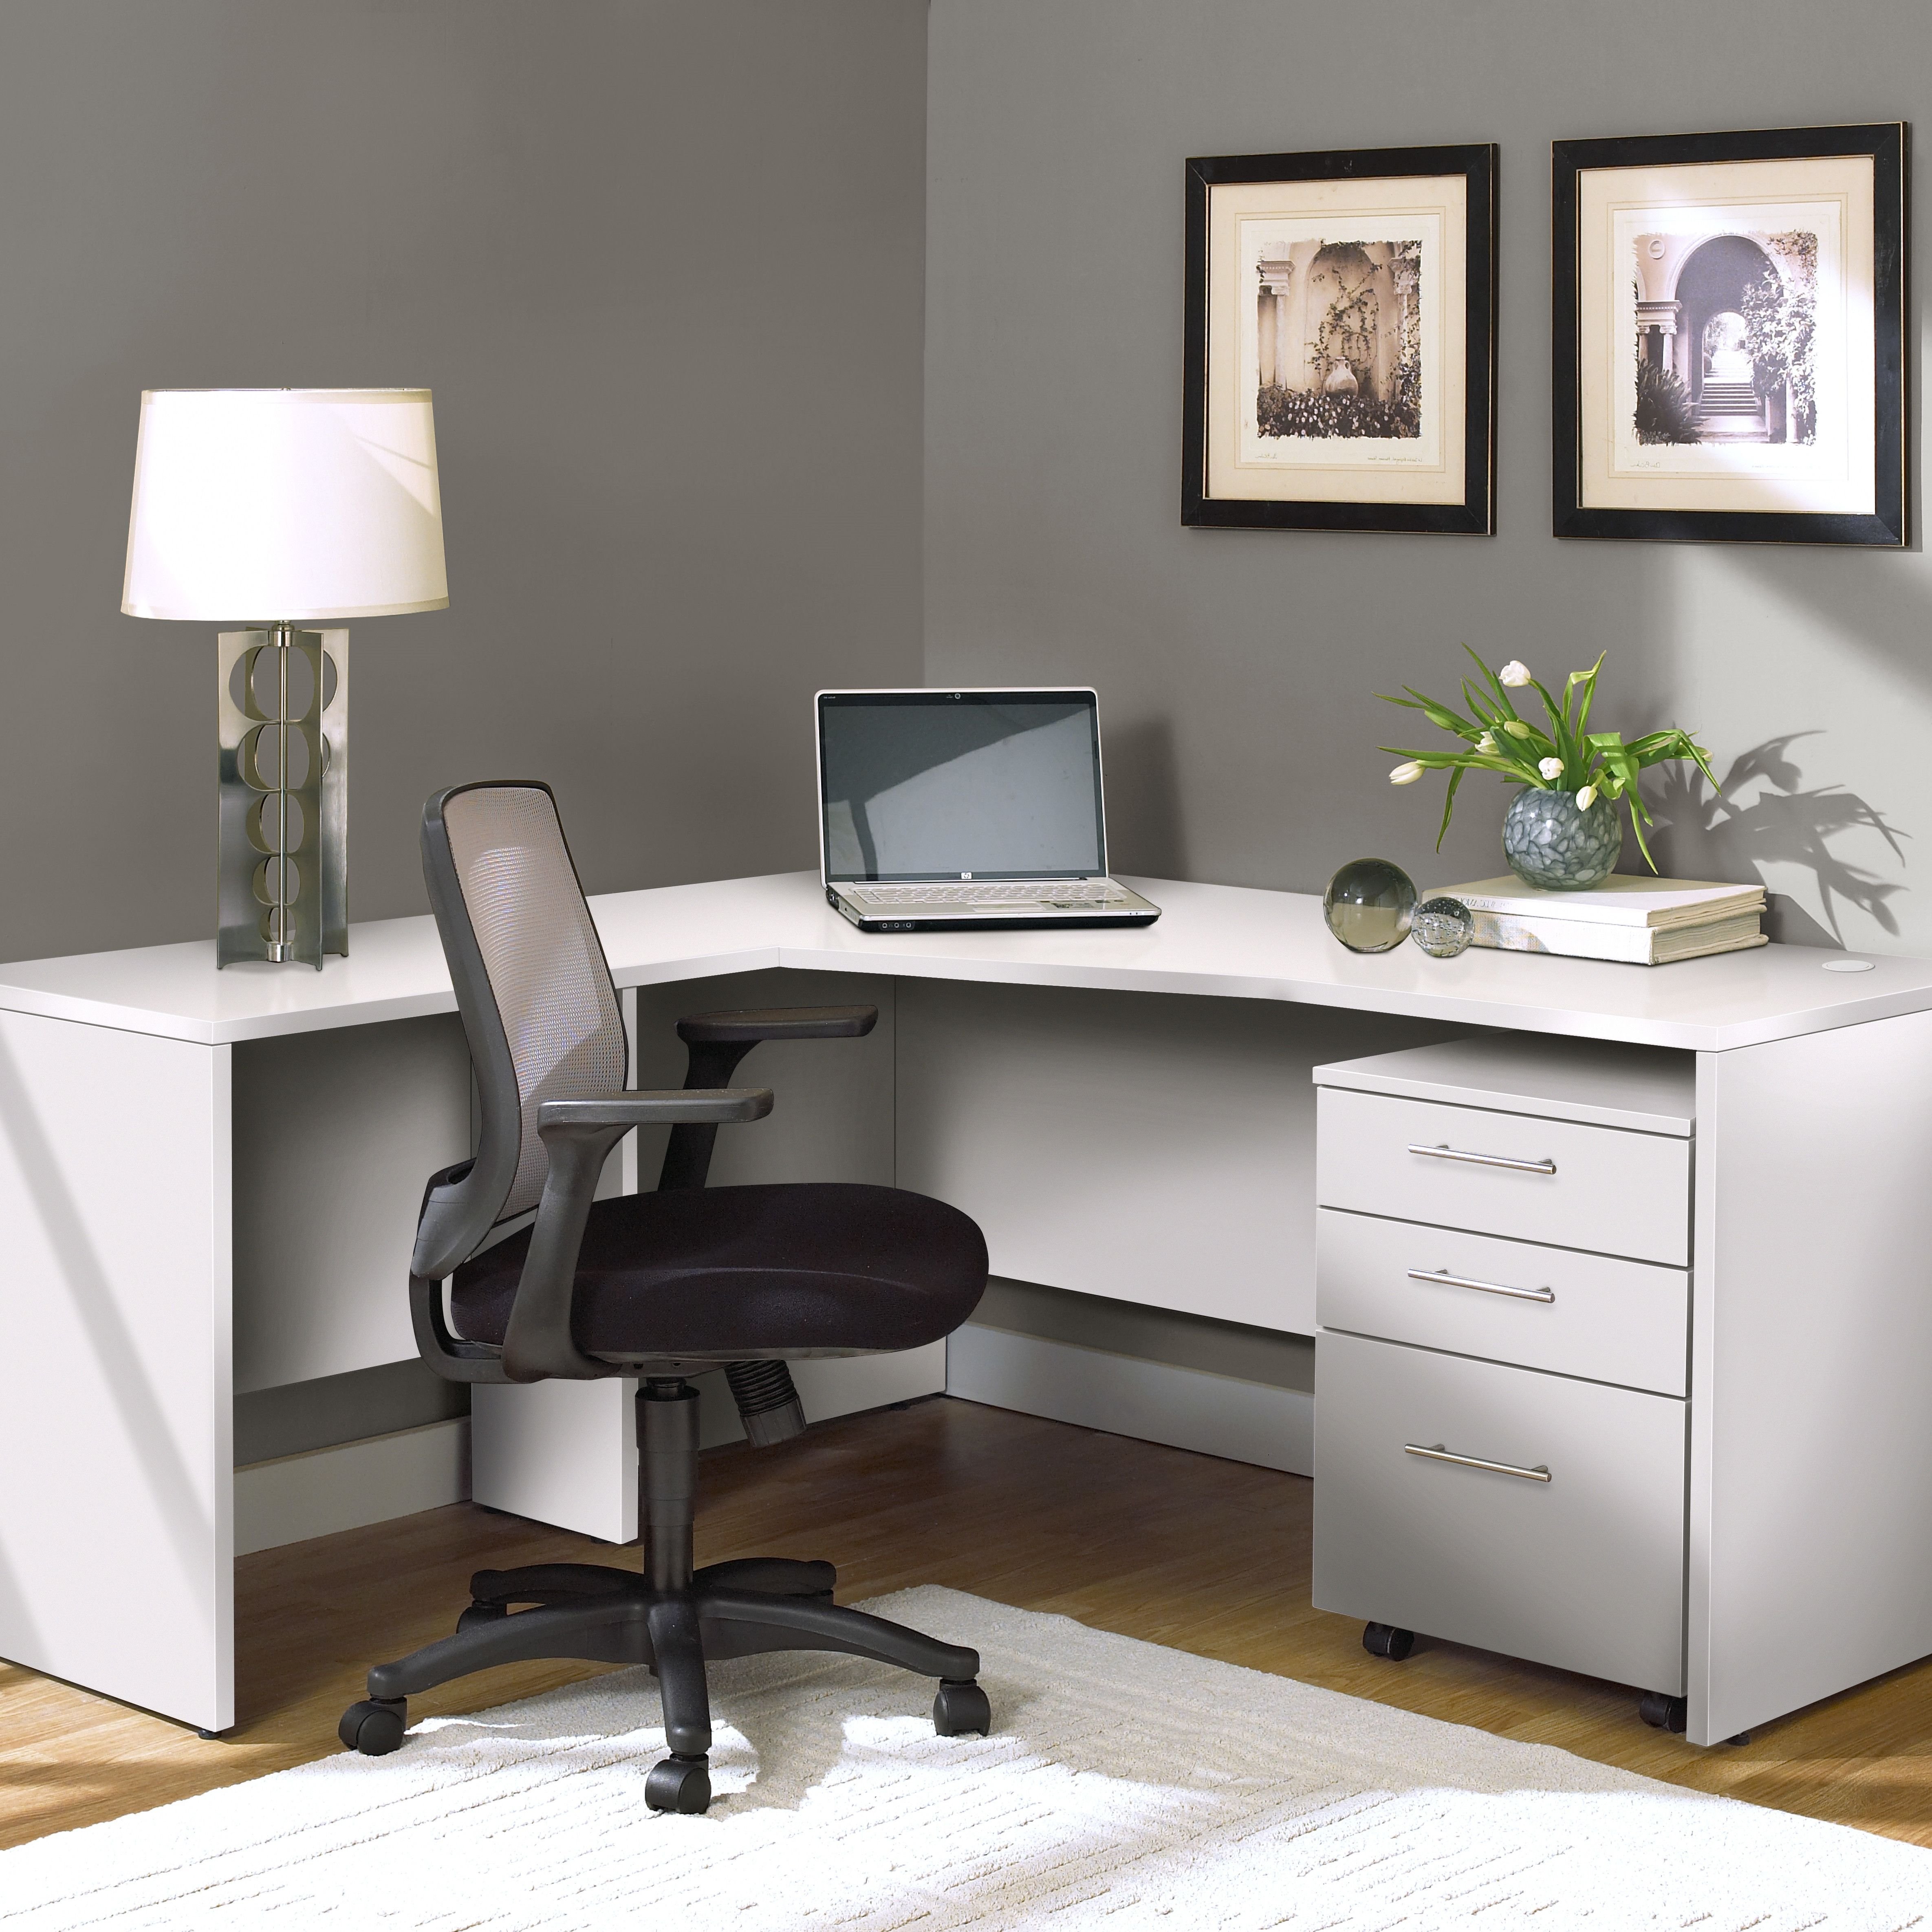 Угол стола. Угловой письменный стол. Современный угловой стол. Угловой стол для кабинета домашнего. Стол компьютерный офисный.